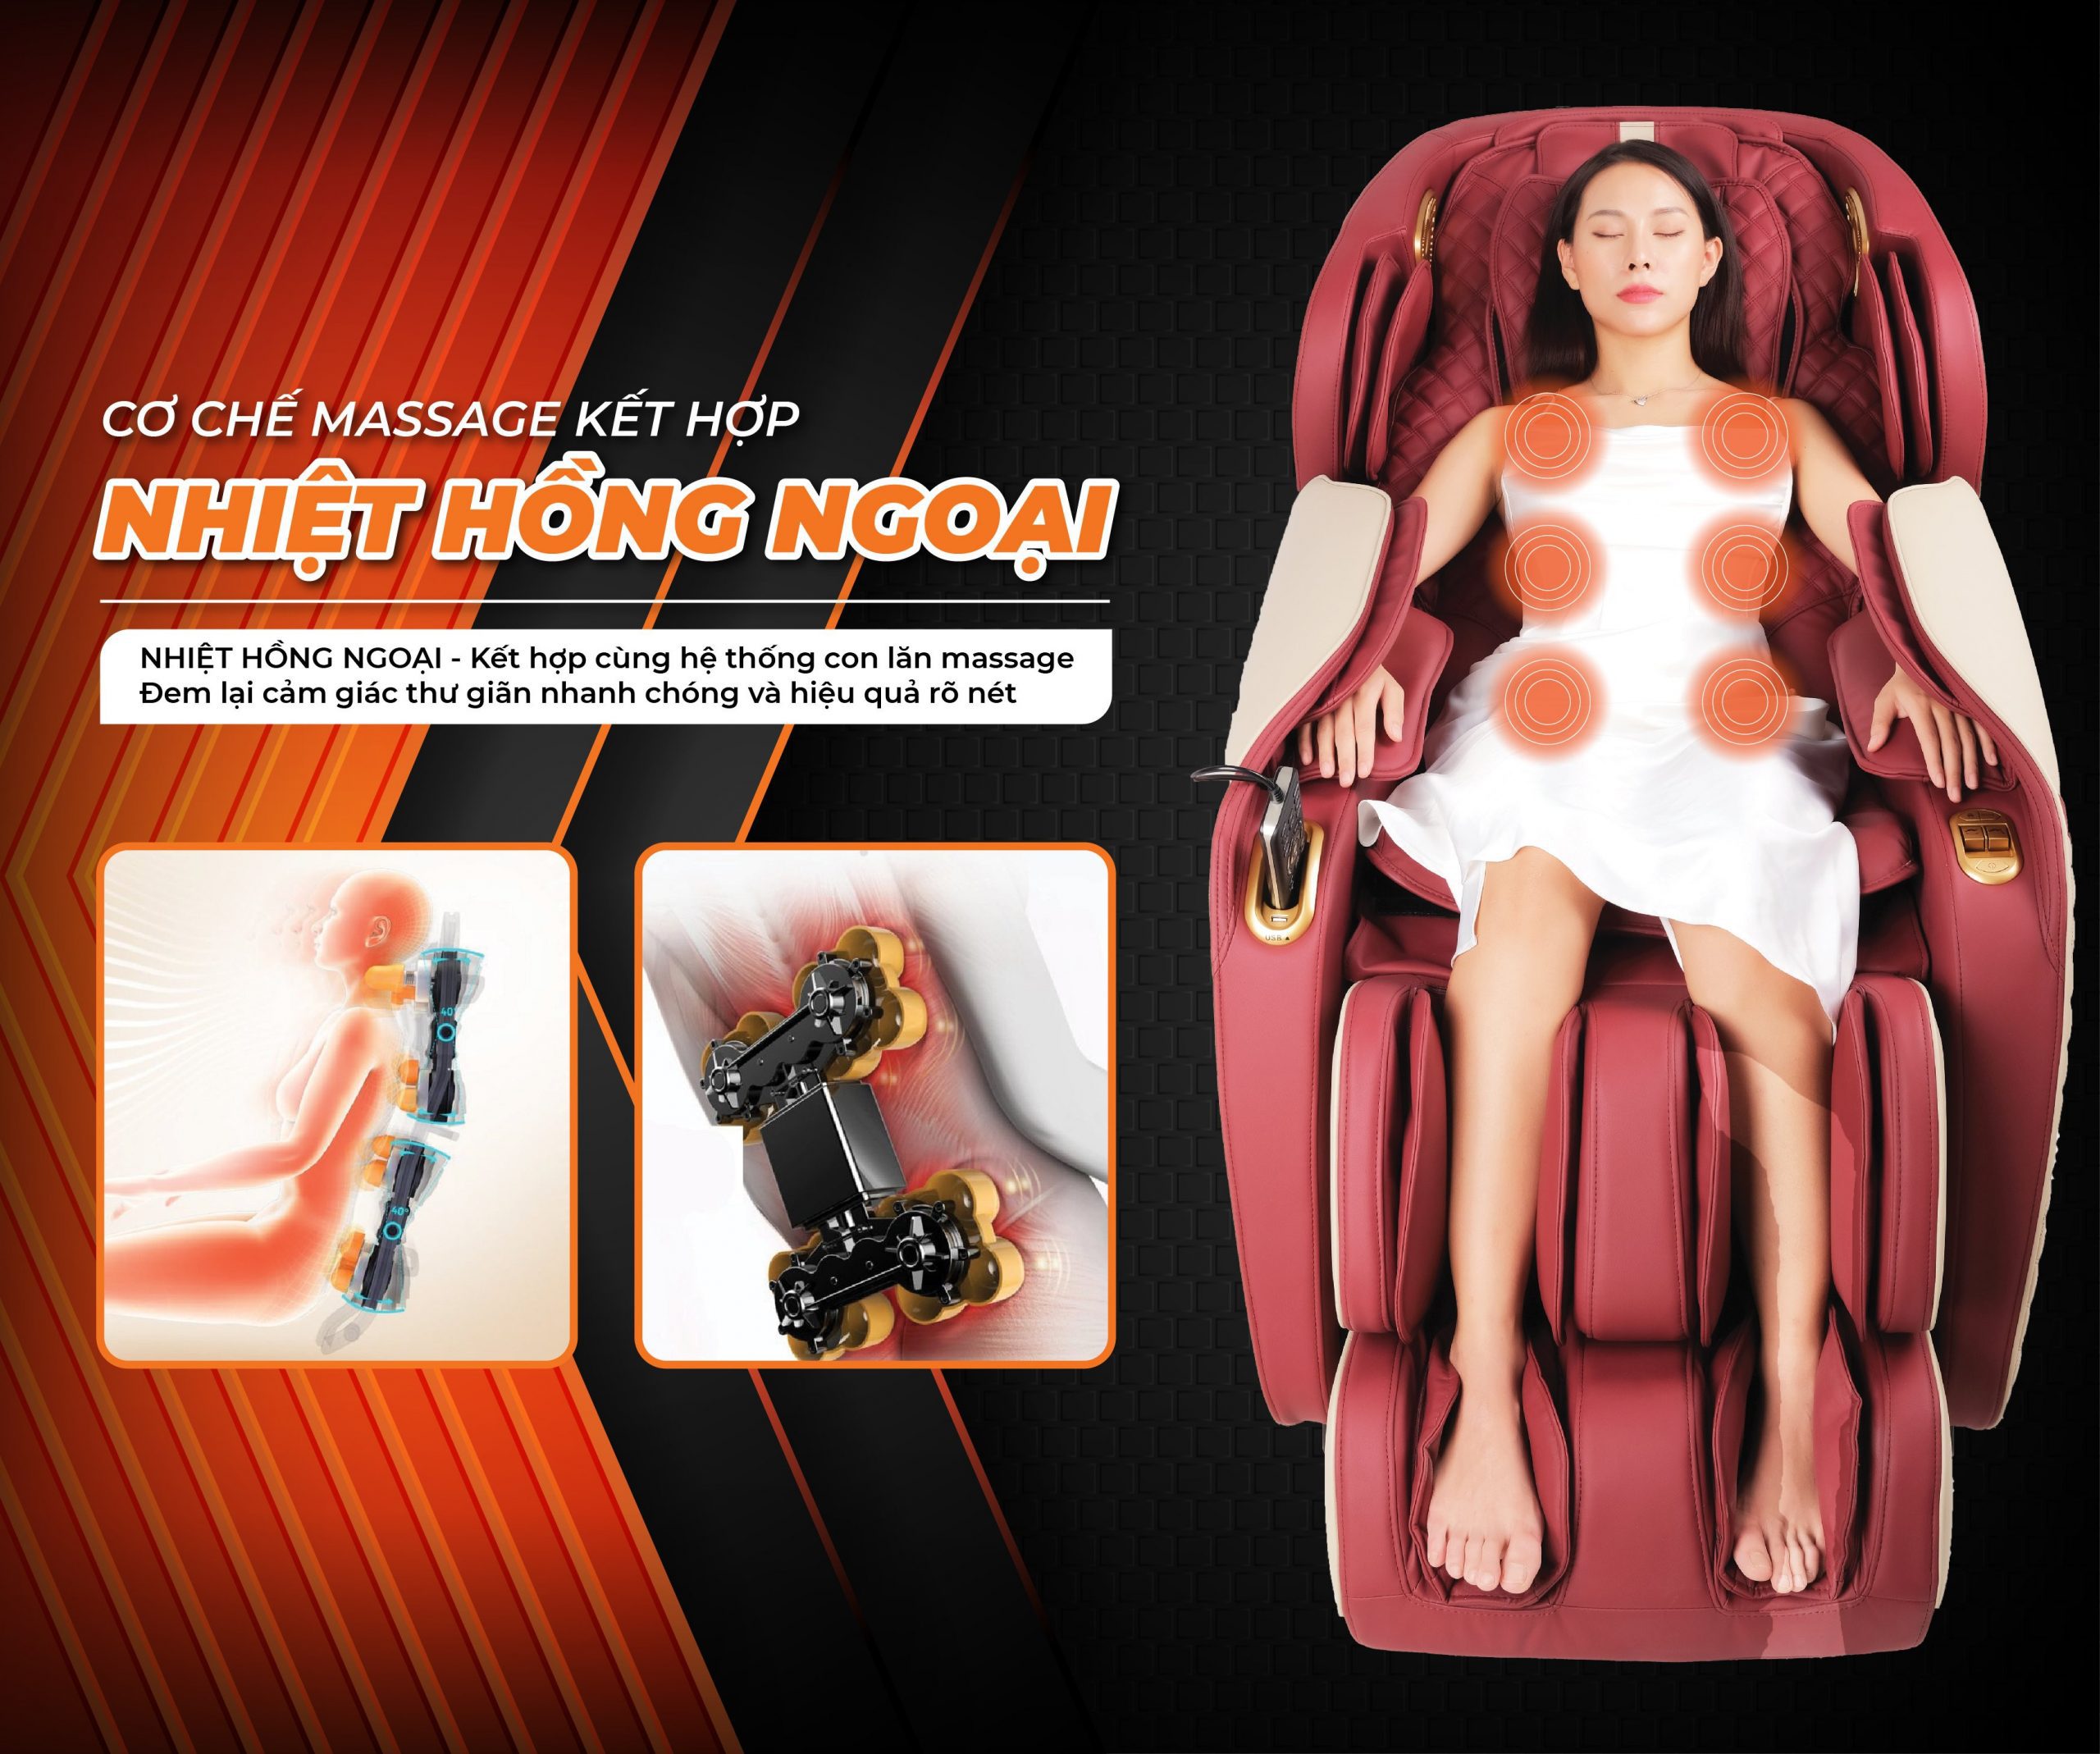 Ghế massage Washima với cơ chế massage nhiệt hồng ngoại hỗ trợ thúc đẩy quá trình lưu thông máu